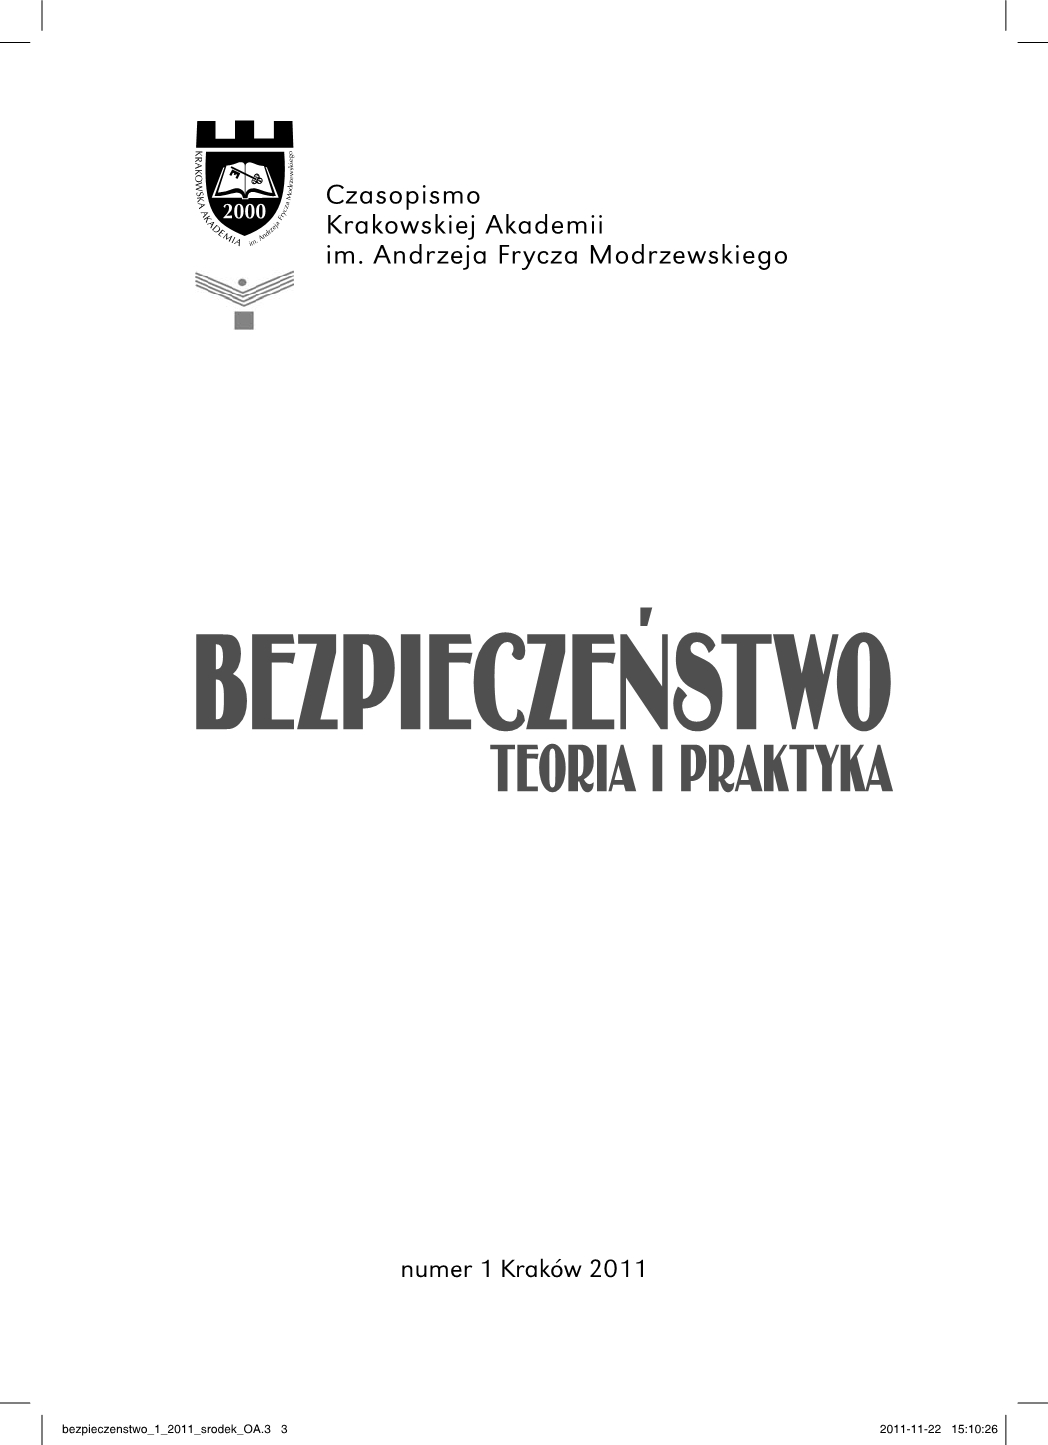 Rosja dziś i jutro. Opinie polskich i niemieckich ekspertów, pod redakcją Agnieszki Łady - book review Cover Image